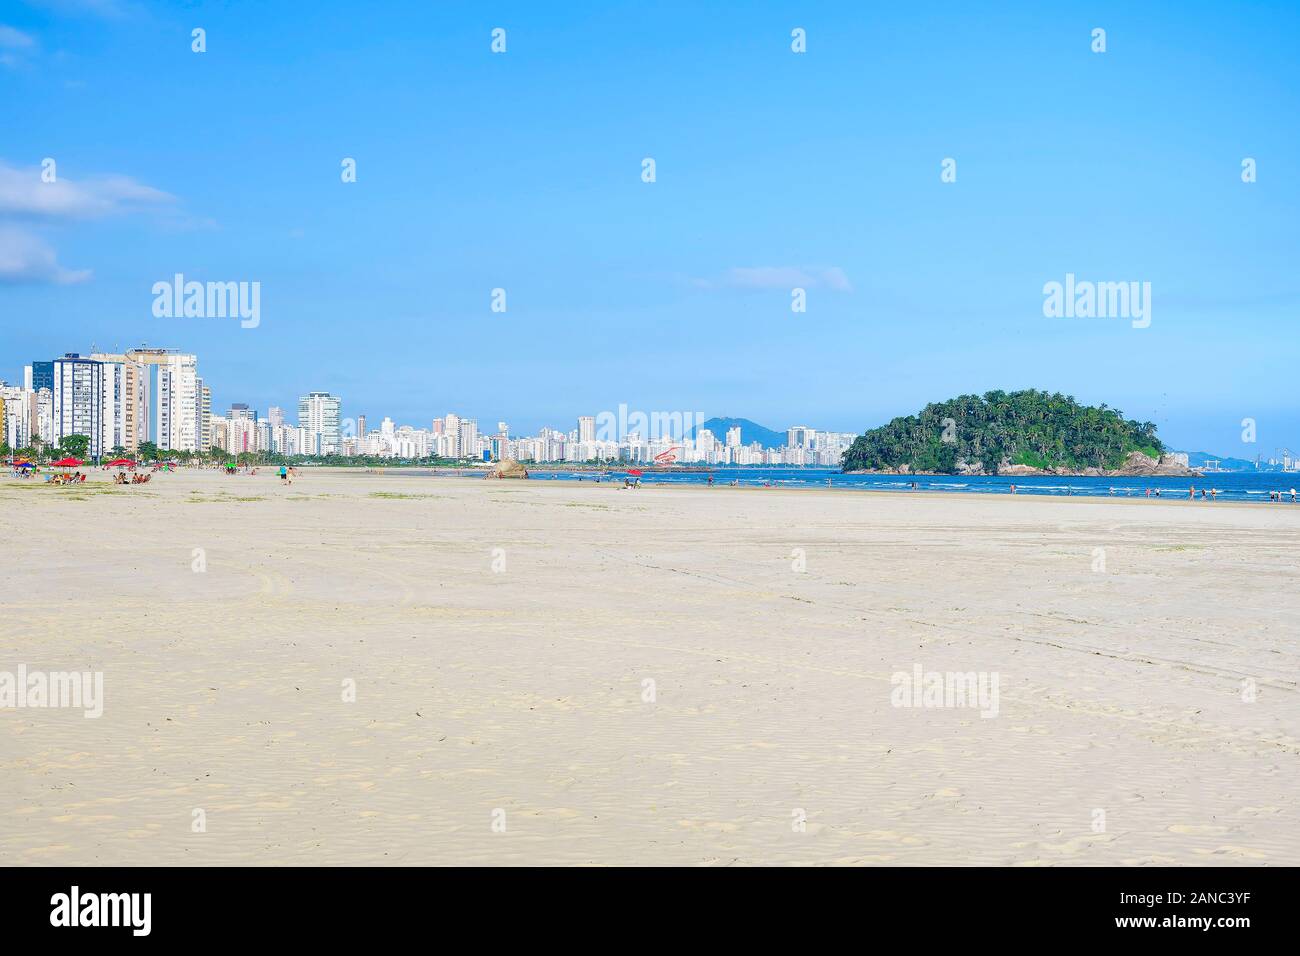 Plage brésilienne Paulista avec une immense bande de sable au bord de l'eau sur une belle journée. Photo de la plage d'Itarare, Sao Vicente ville avec la vue de Jose Menino b Banque D'Images